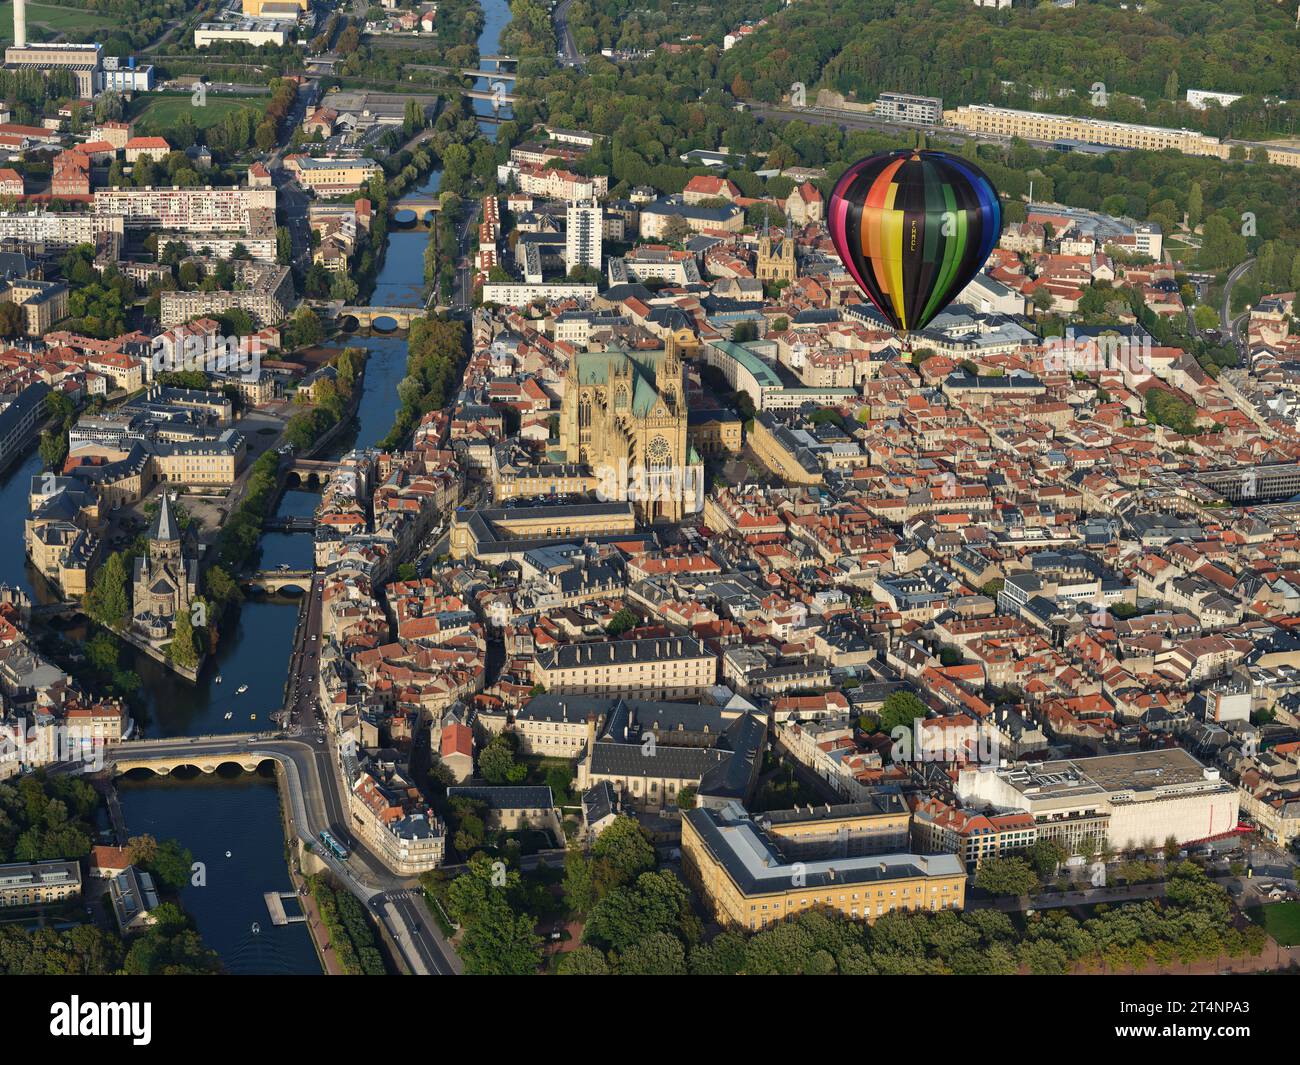 VUE AIR-AIR. Montgolfière dérivant au-dessus de la ville de Metz. Moselle, Grand est, France. Banque D'Images